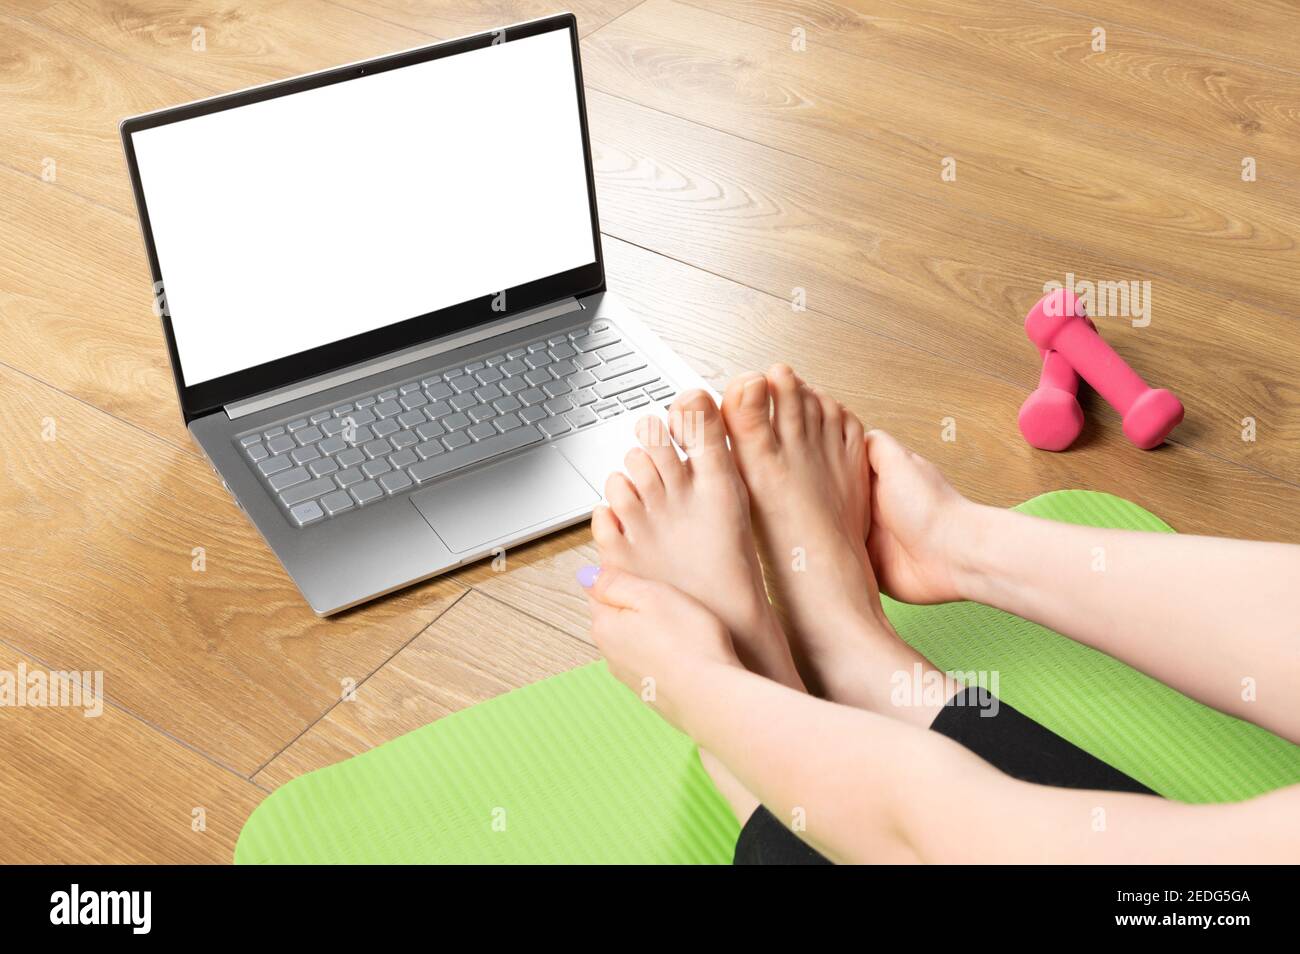 Posez une femme sportive en bonne santé assise sur un tapis dans la pose de Paschimottanasana, faisant des exercices de respiration, regardant les cours de yoga en ligne sur ordinateur portable maquette. Activé Banque D'Images